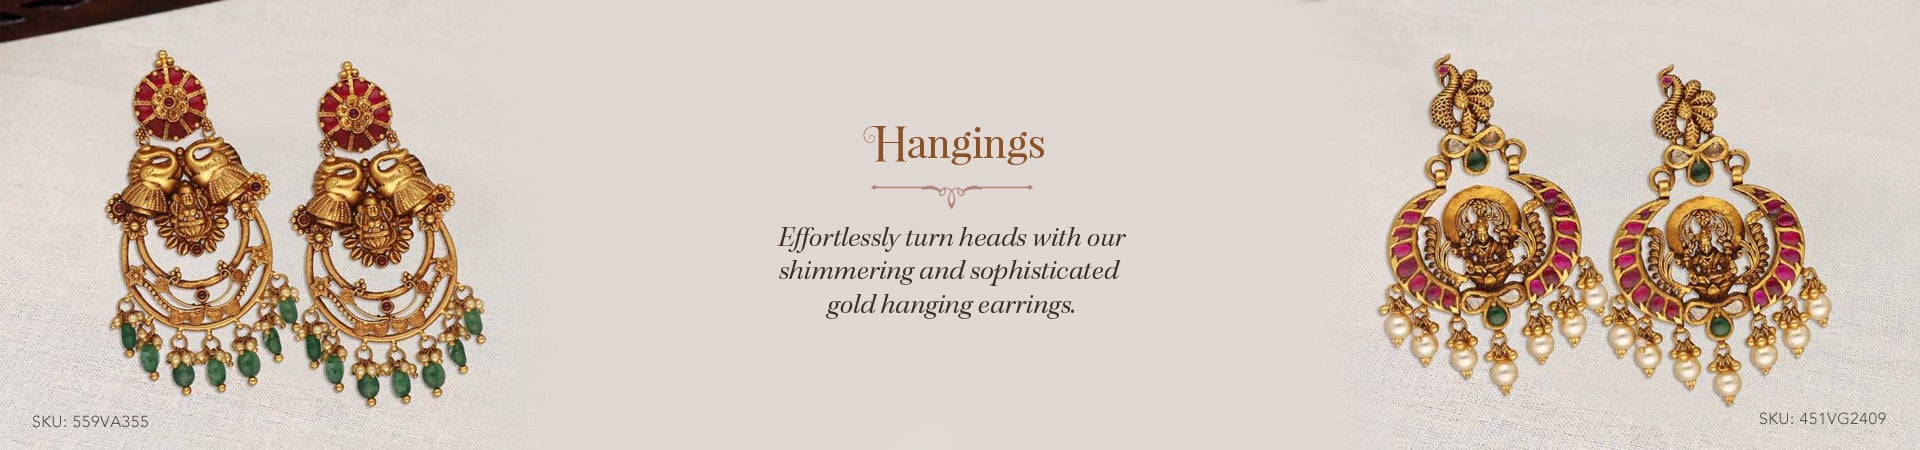 Gold Hangings Earrings Online 